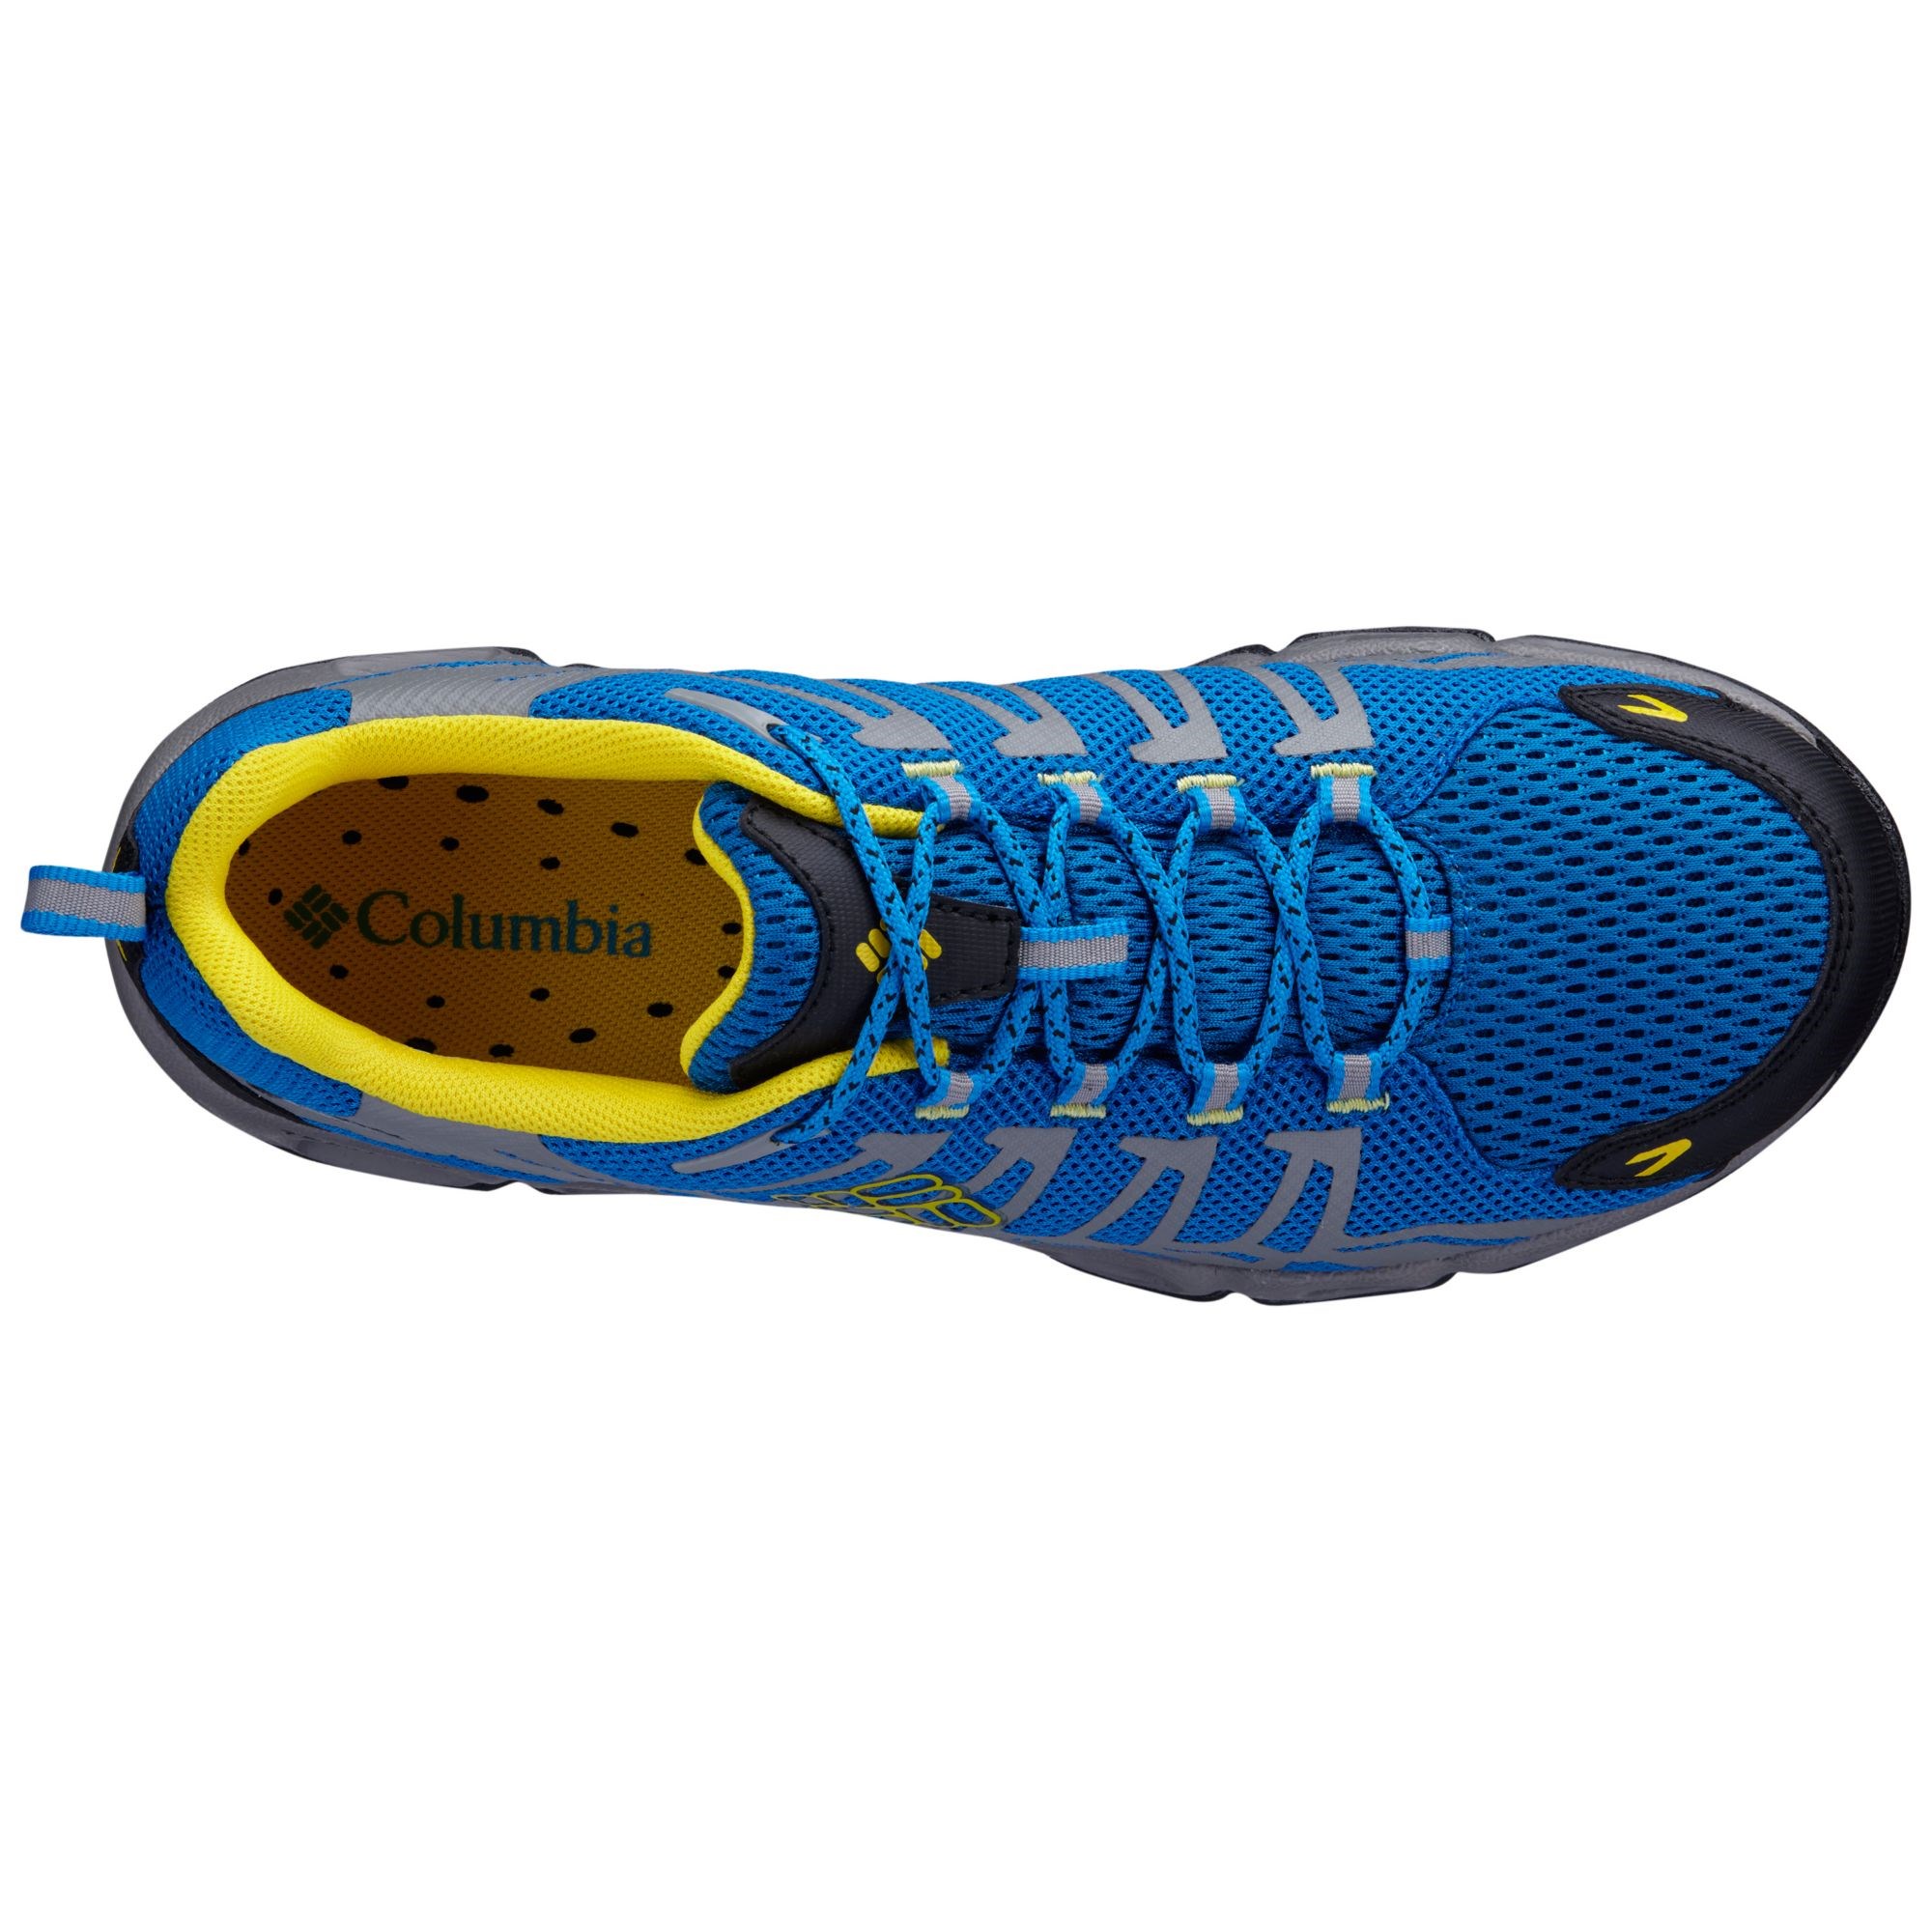 Columbia Ventrailia Erkek Spor Ayakkabı Ürün kodu: BM3964-426 | Etichet  Sport